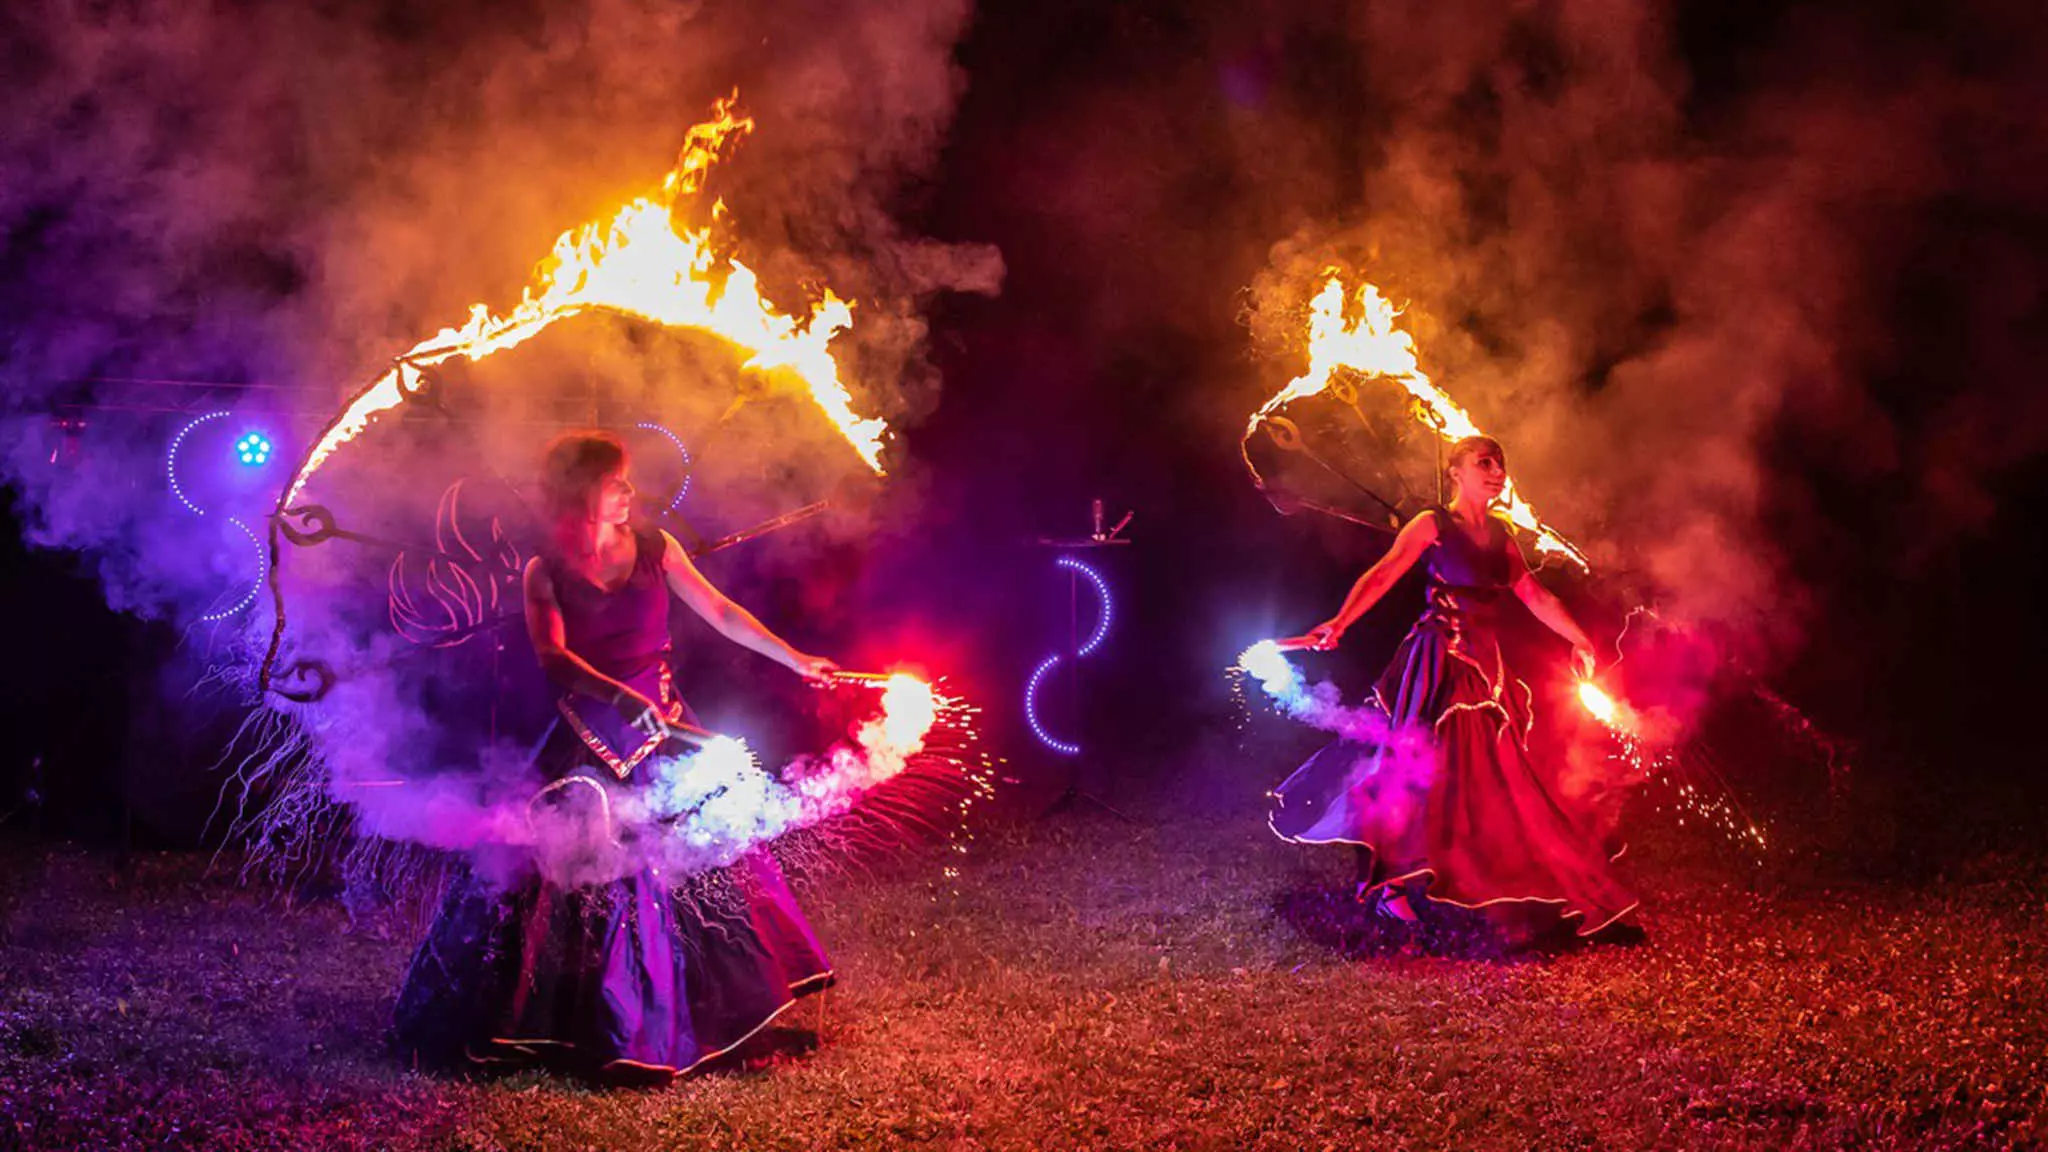 dwie tancerki wykonujące pokaz fireshow podczas pokazu ognia na weselu